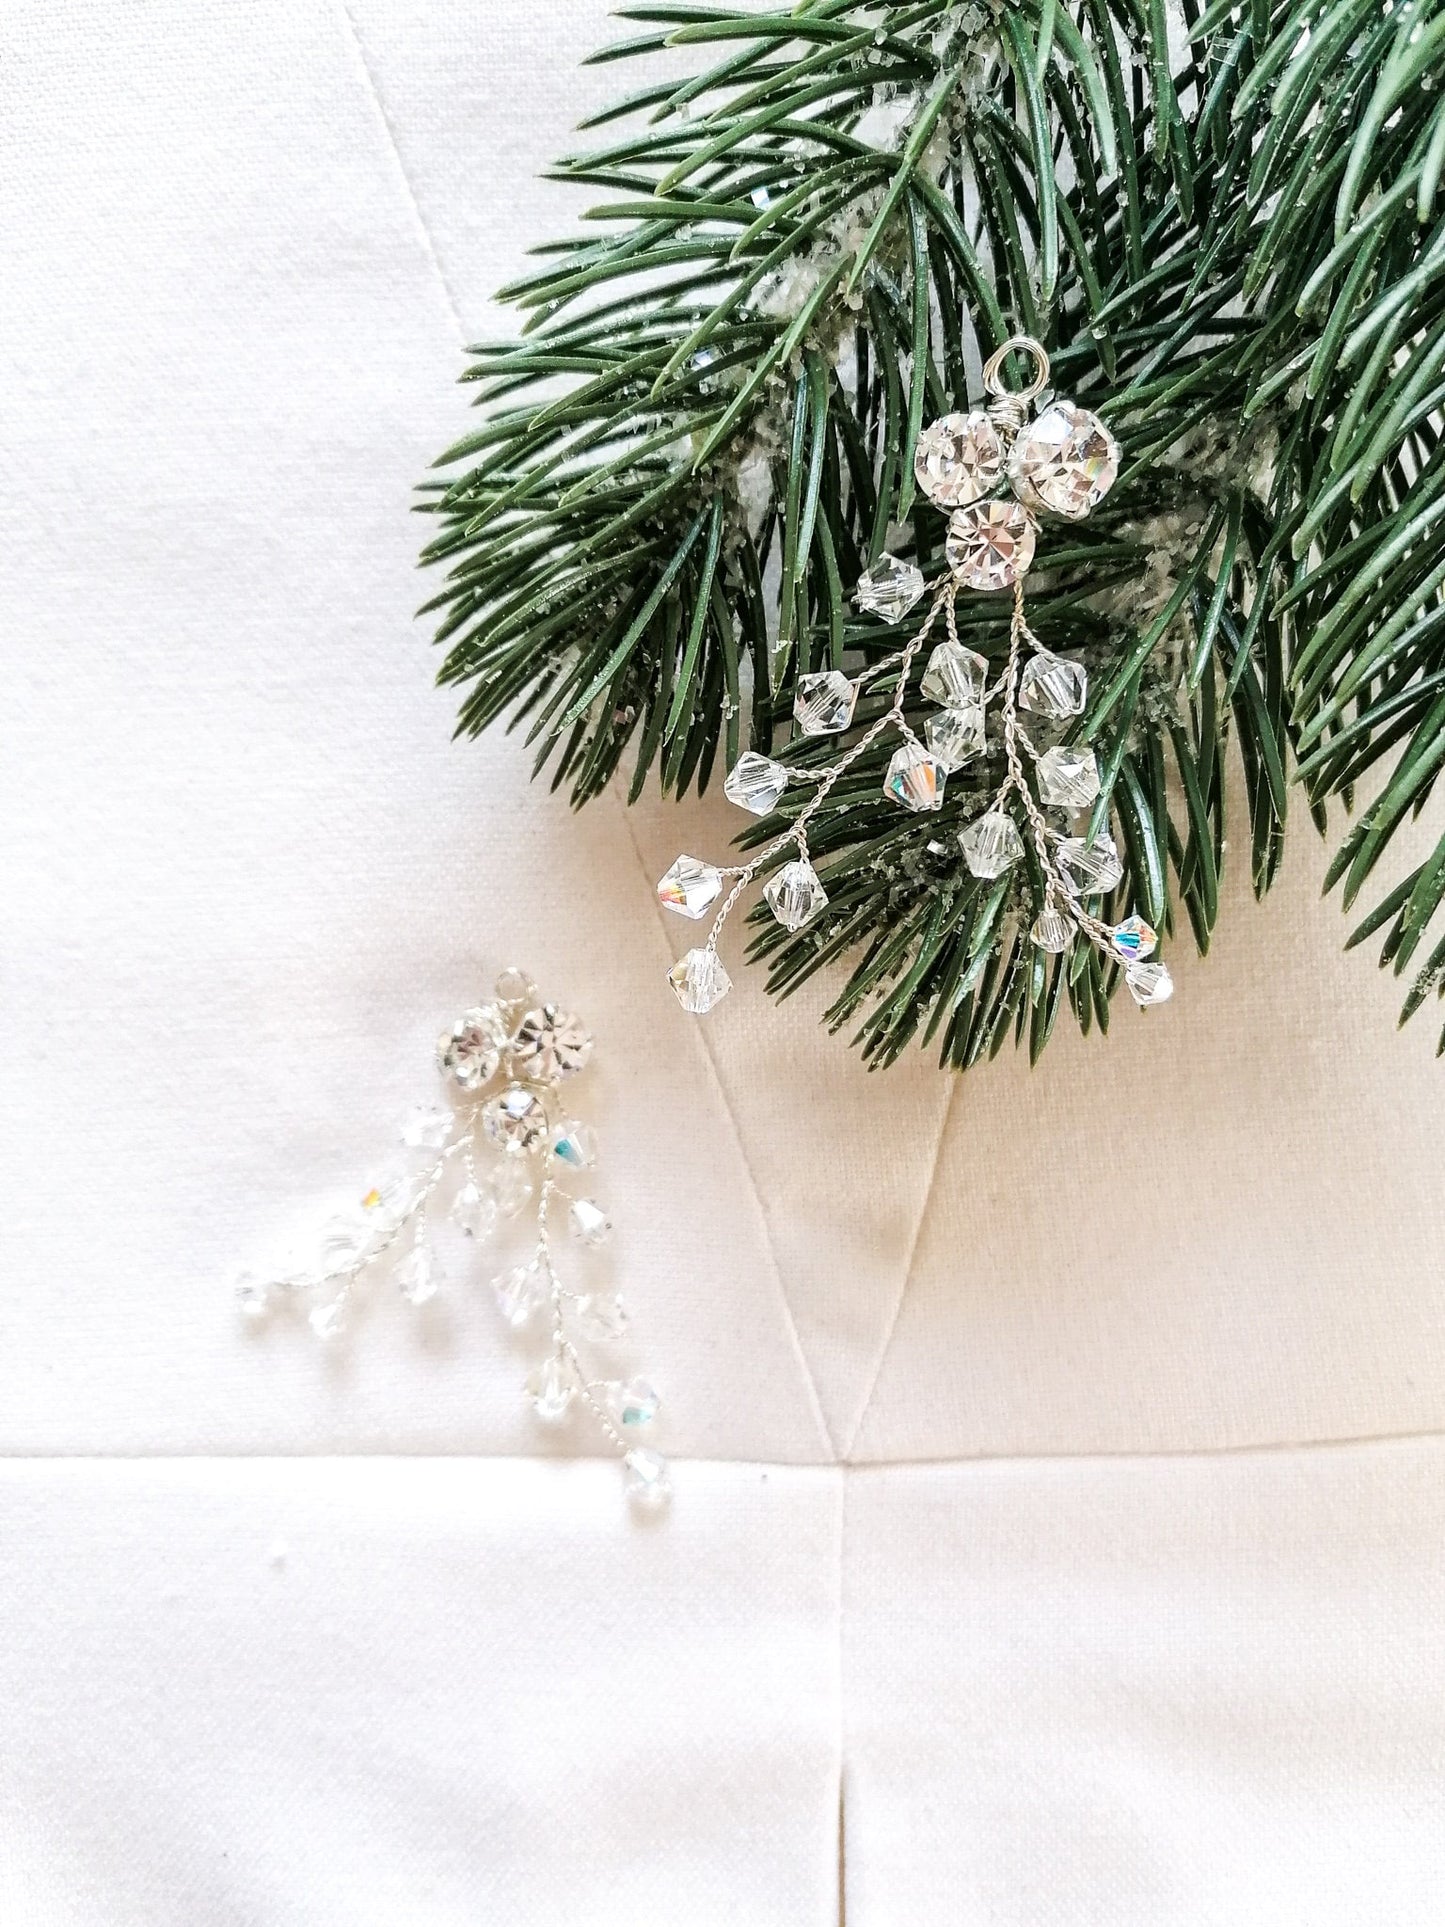 Holly twig crystal ornaments